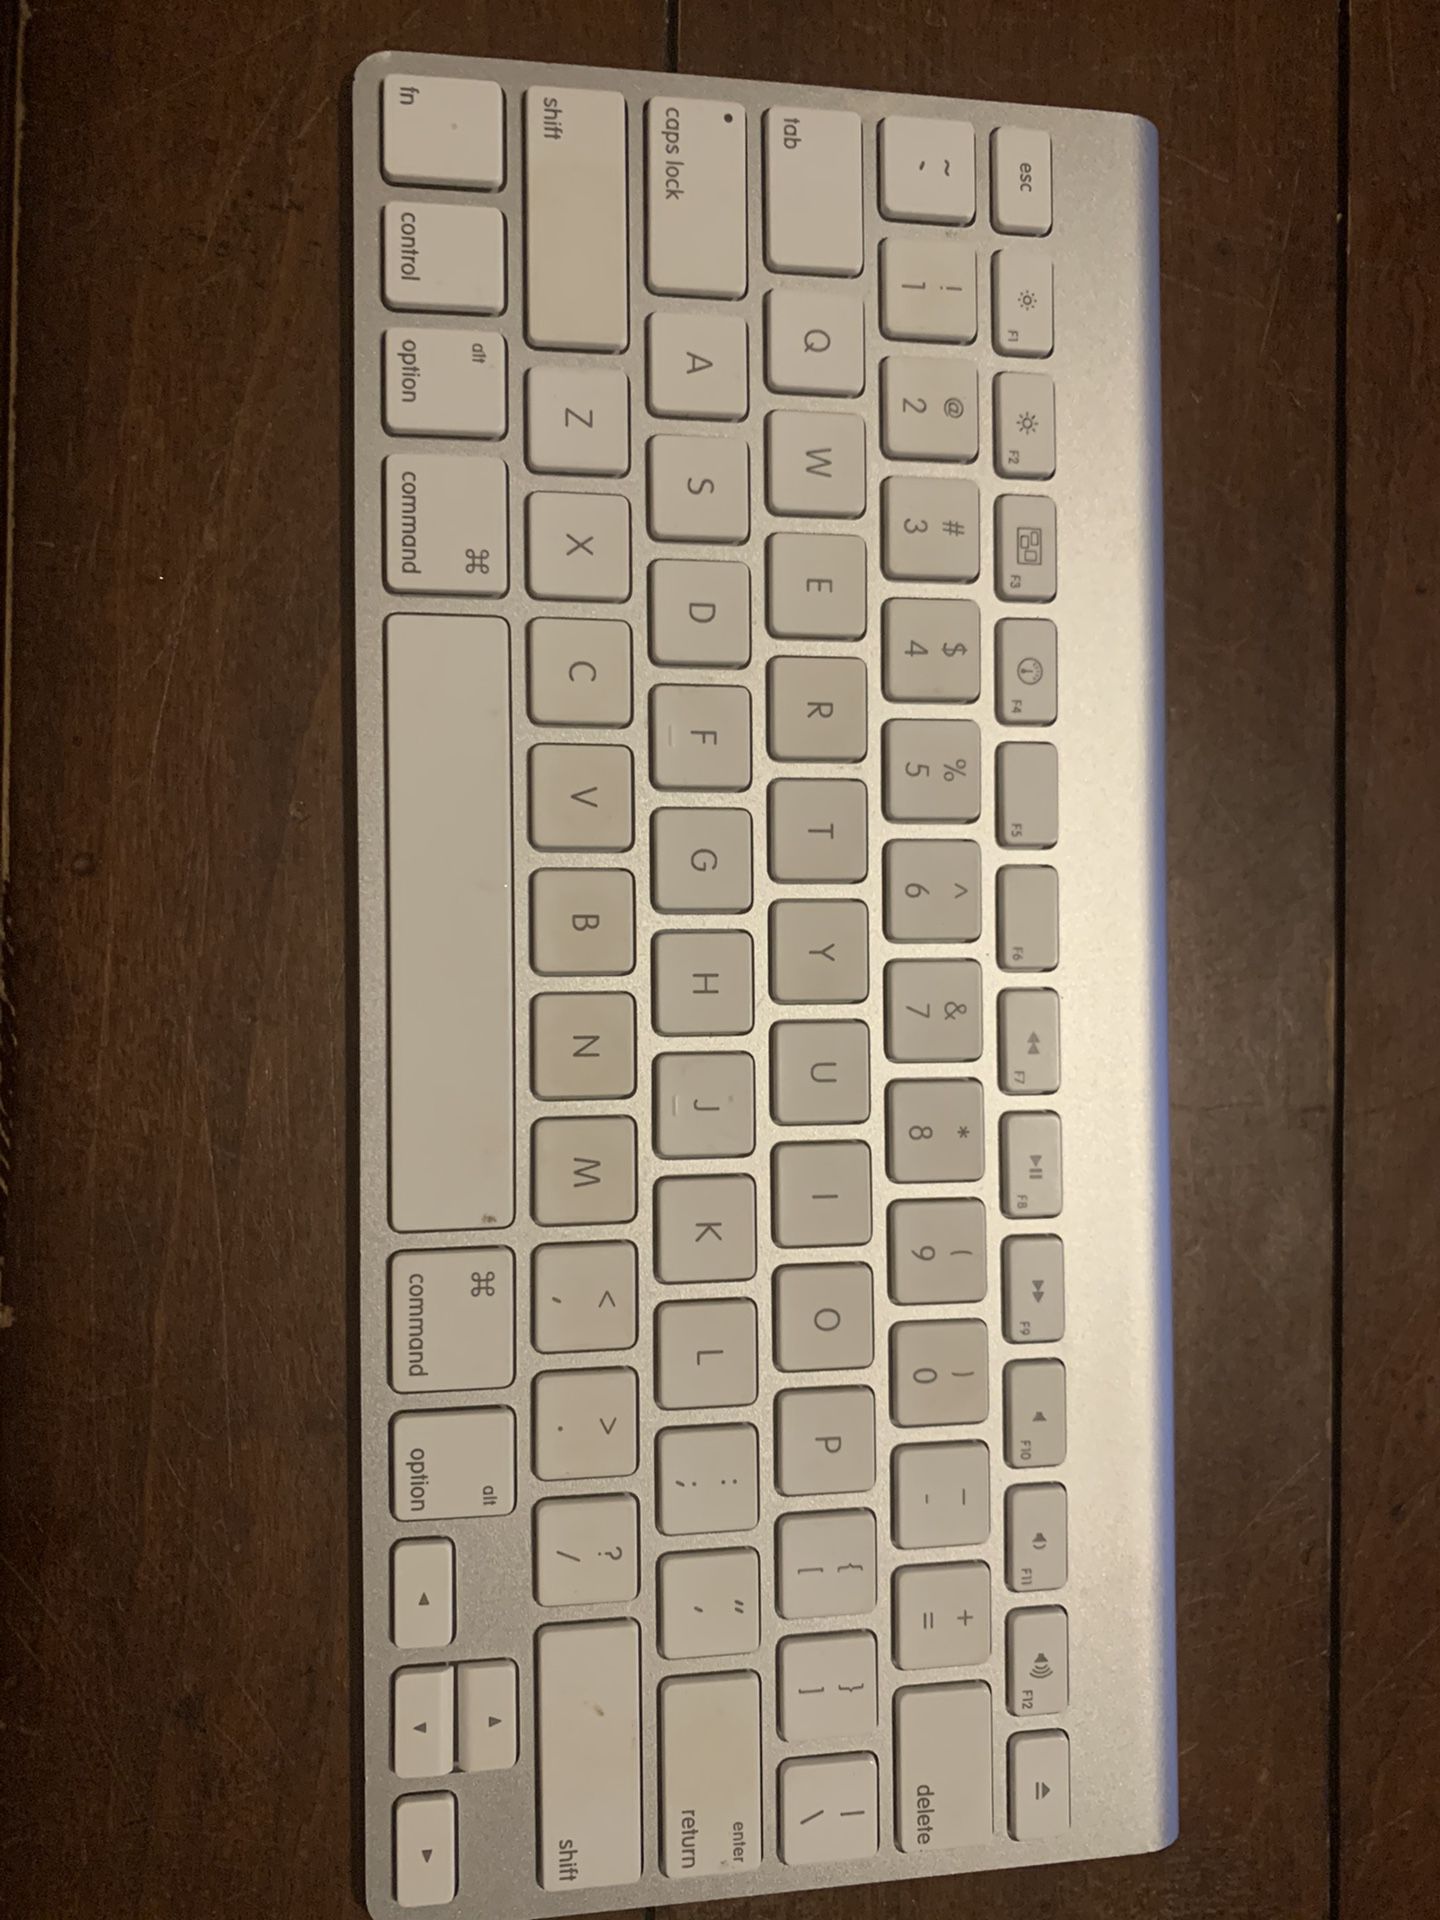 Apple A1314 3rd gen Bluetooth keyboard